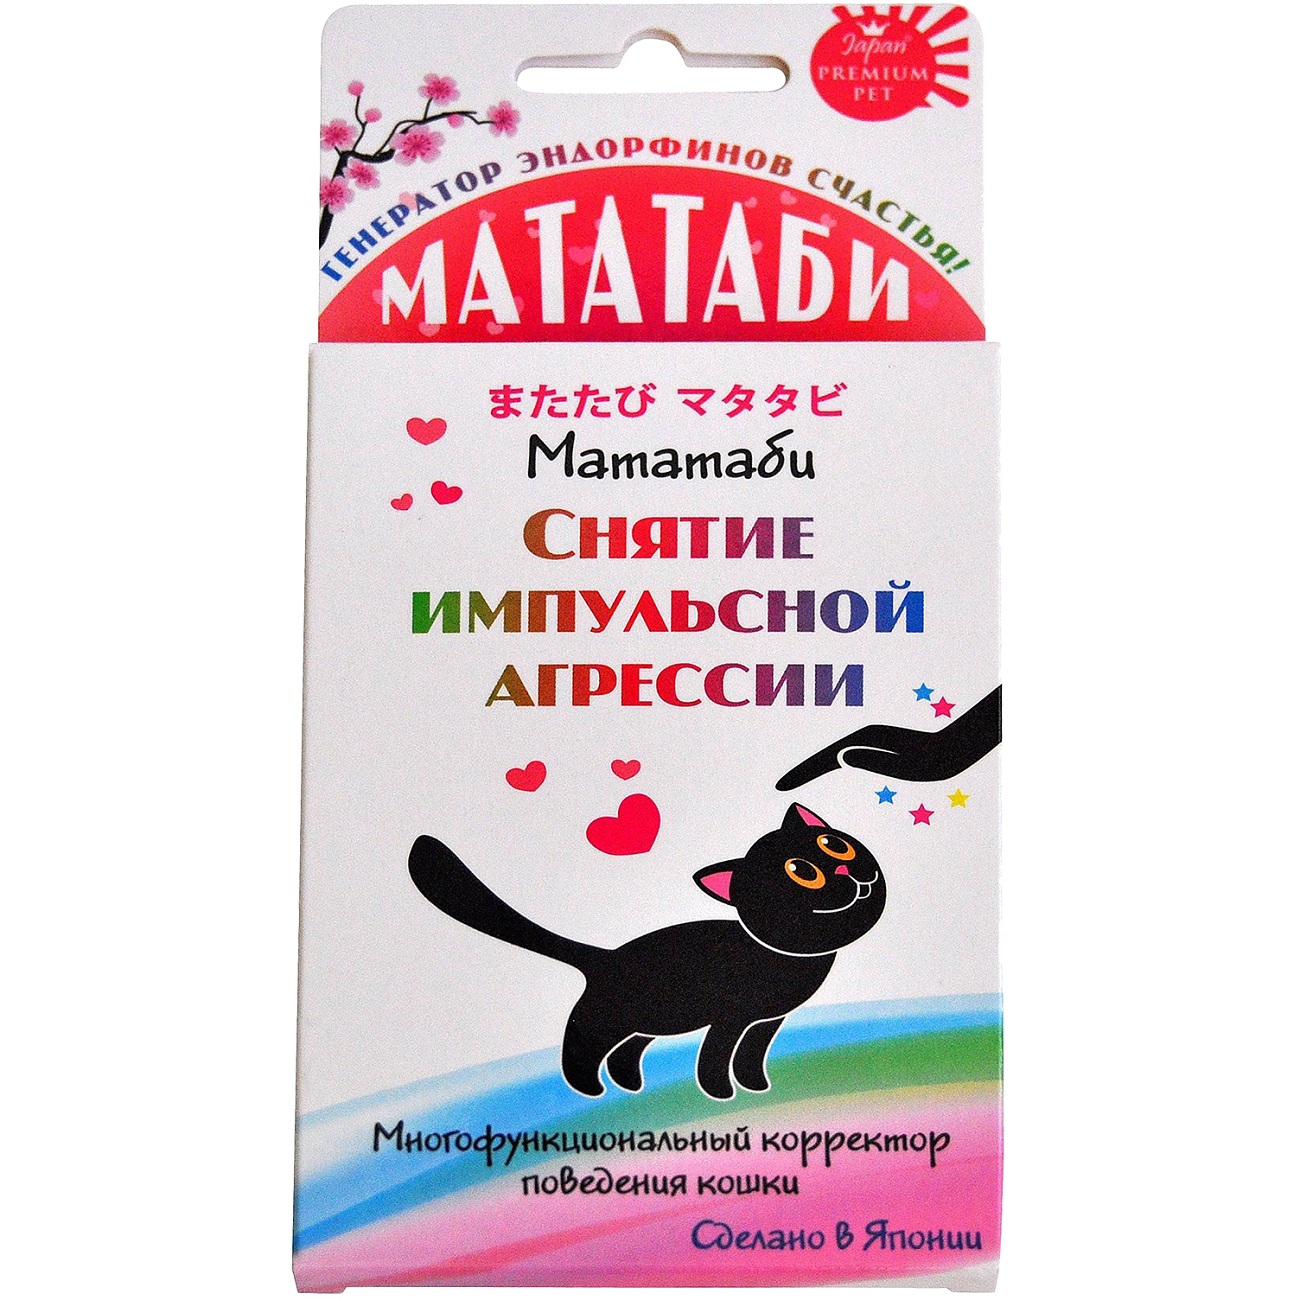 Средство Japan premium pet Мататаби для снятия импульсной агрессии кошек 1 г